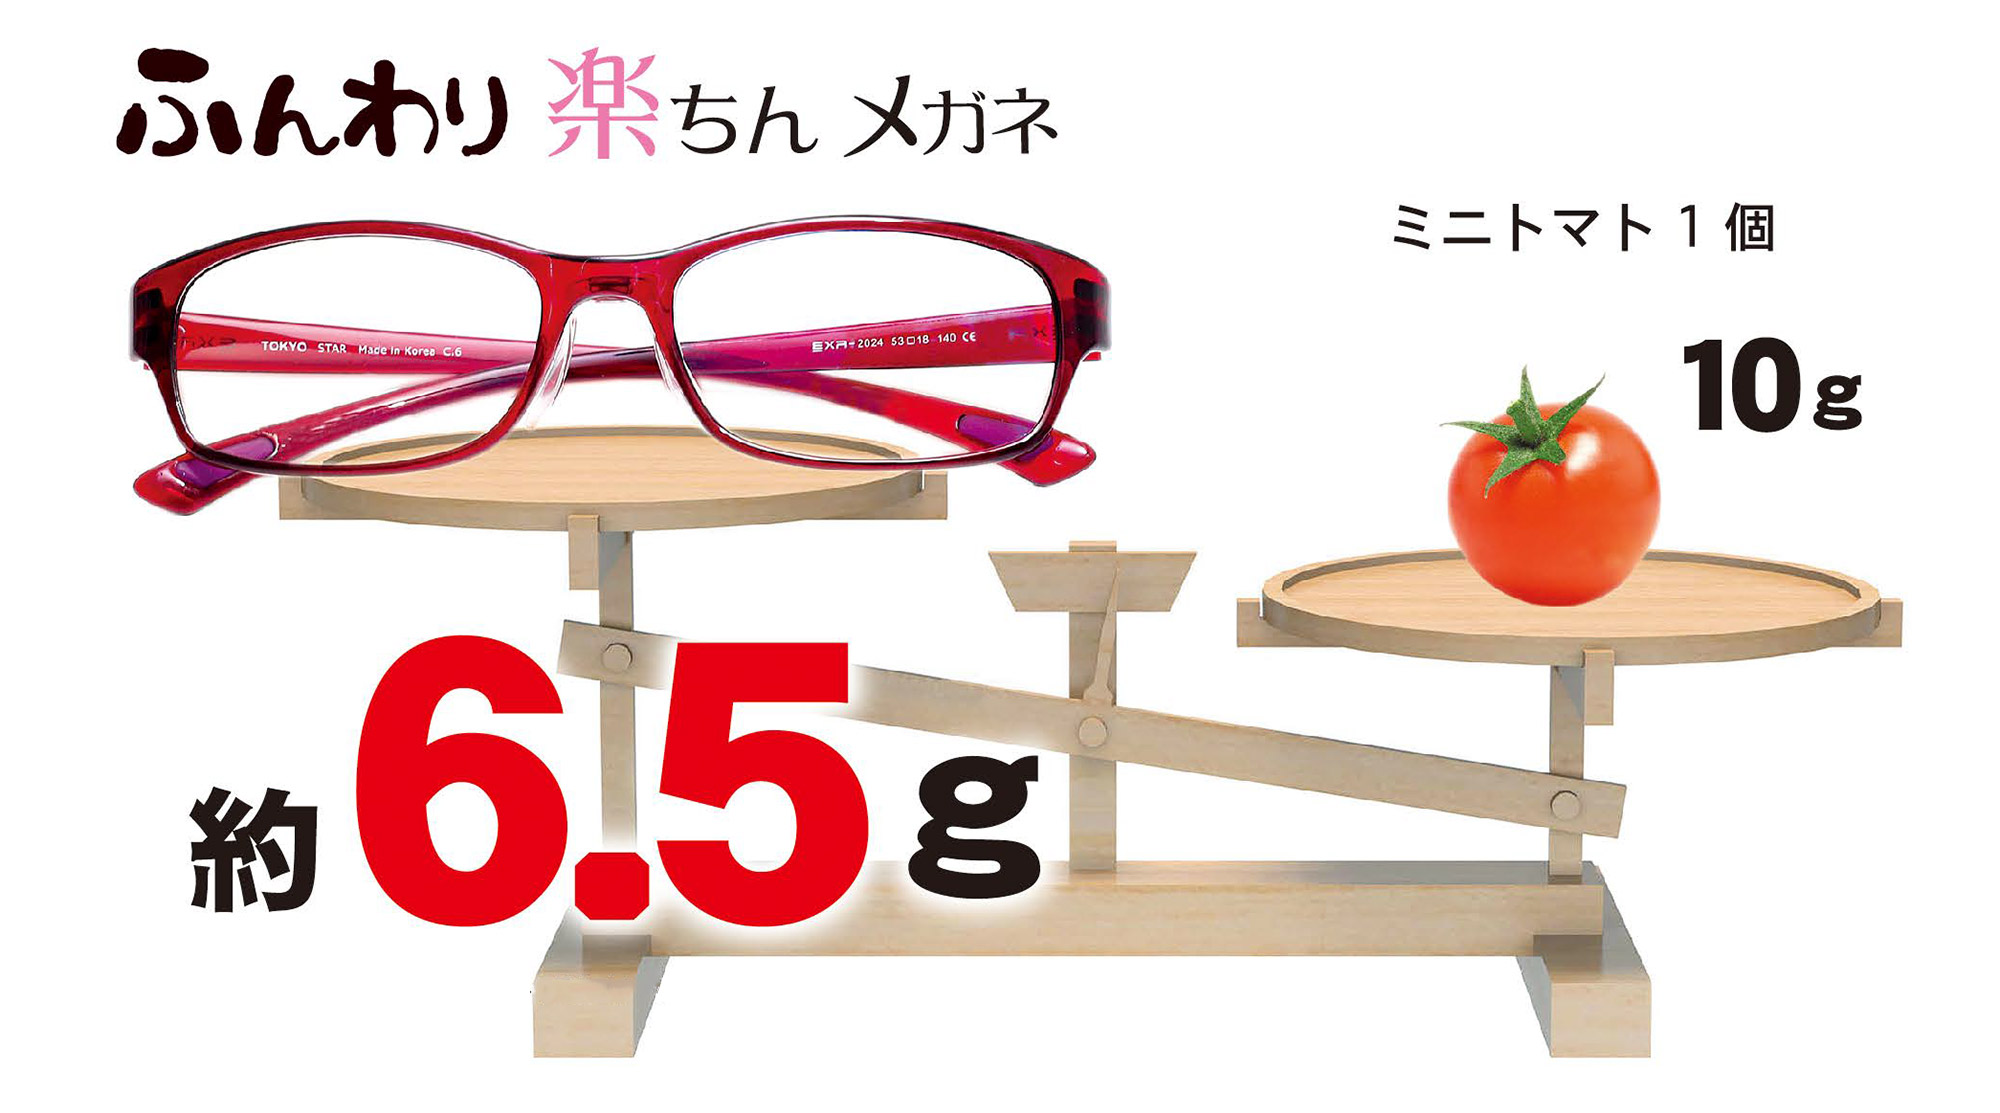 ふんわり楽ちん眼鏡のフレームは重さ約6.5グラム。ミニトマト1個（約10グラム）よりも軽いフレームです。